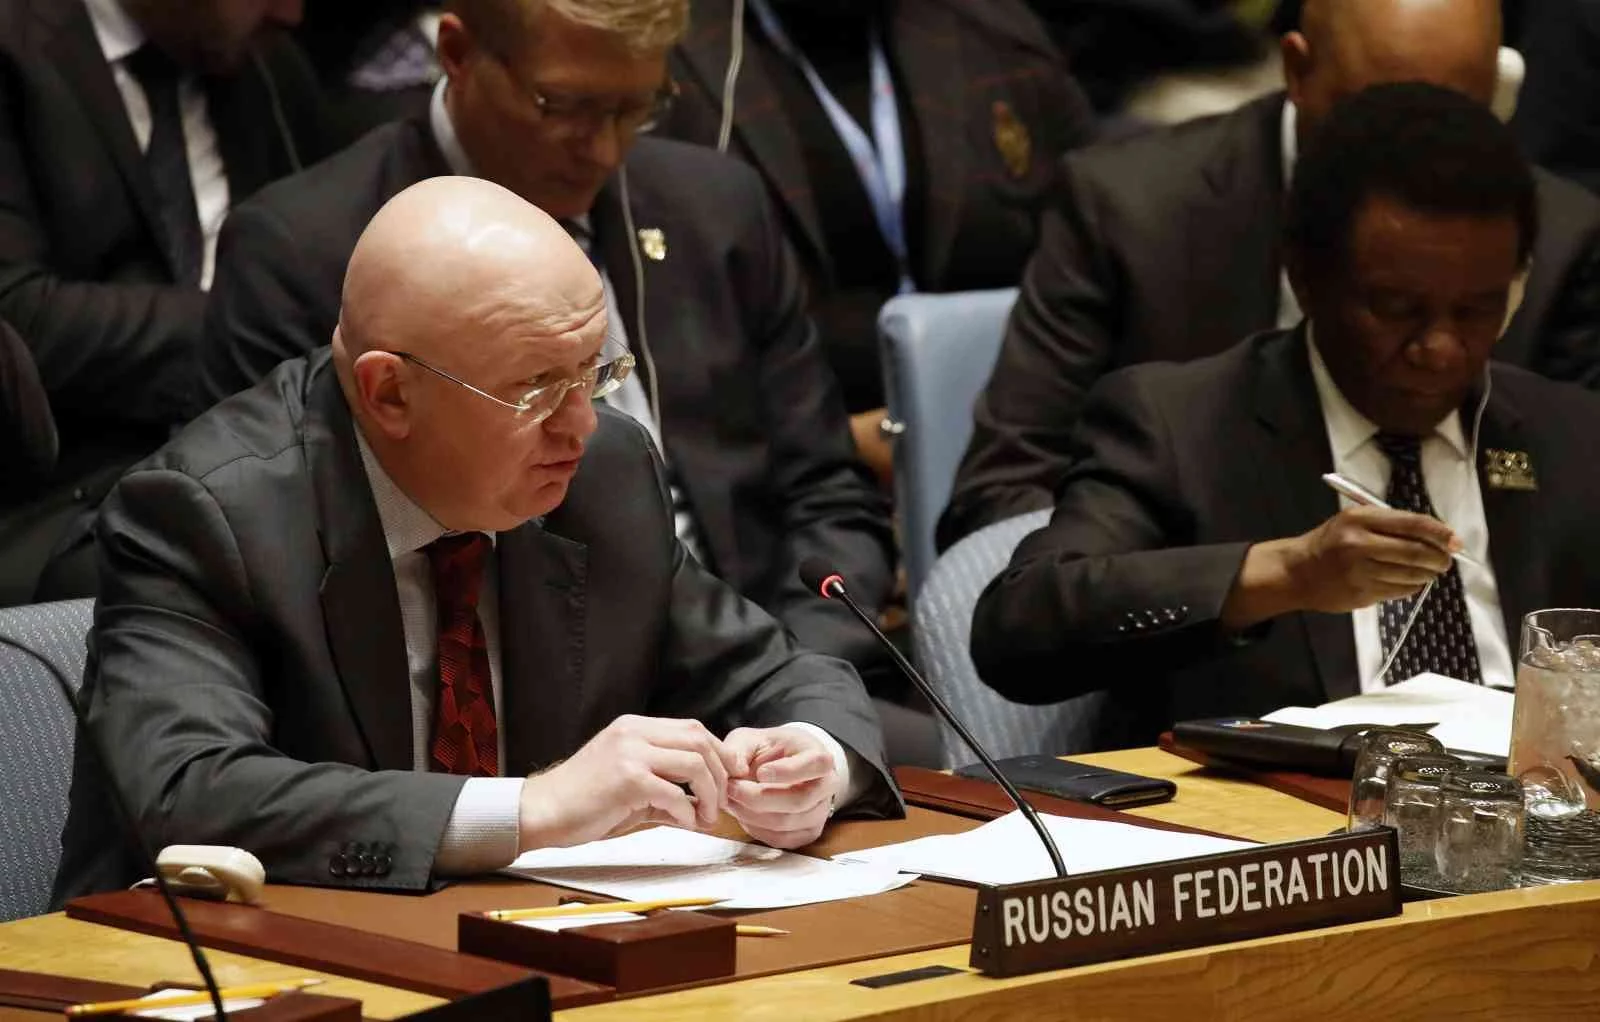 Rusyanın BM Daimi Temsilcisi Nebenzya: “Özel askeri operasyon hedeflerine ulaştığında duracaktır”